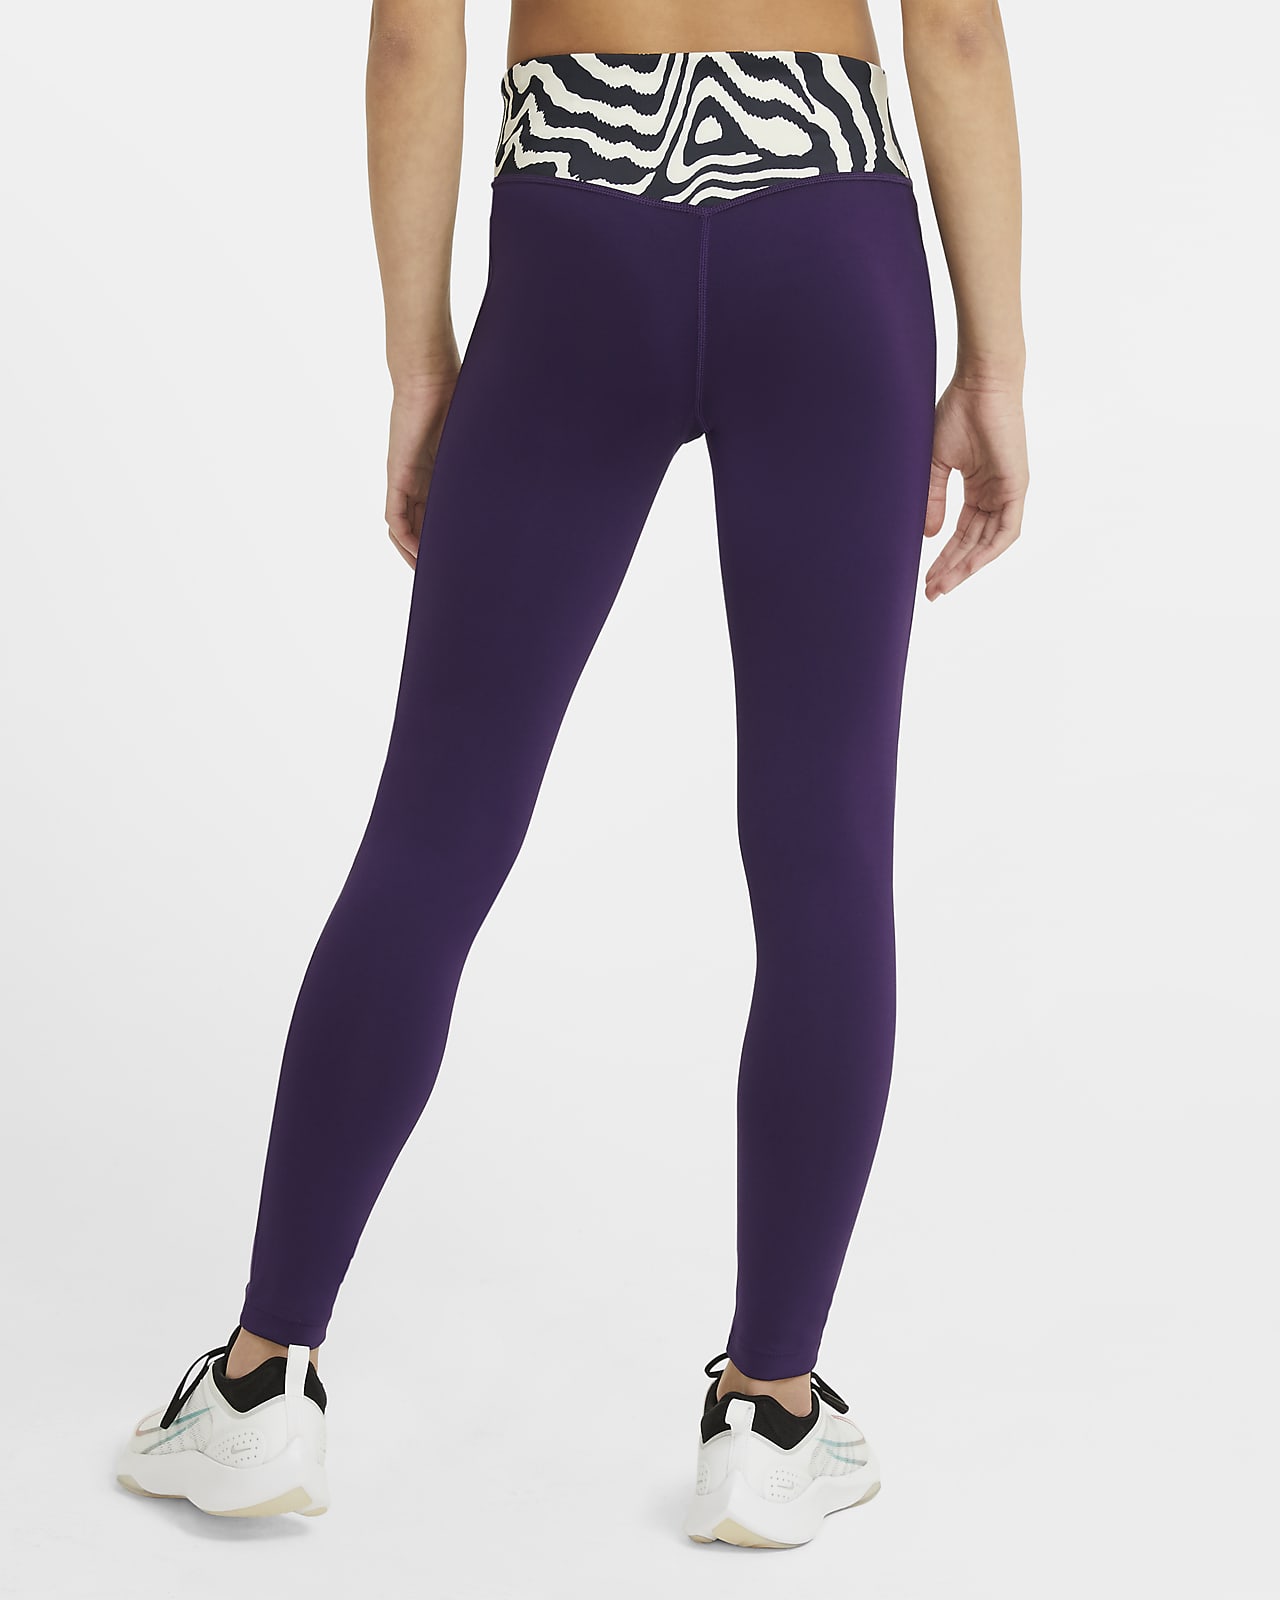 purple nike tights